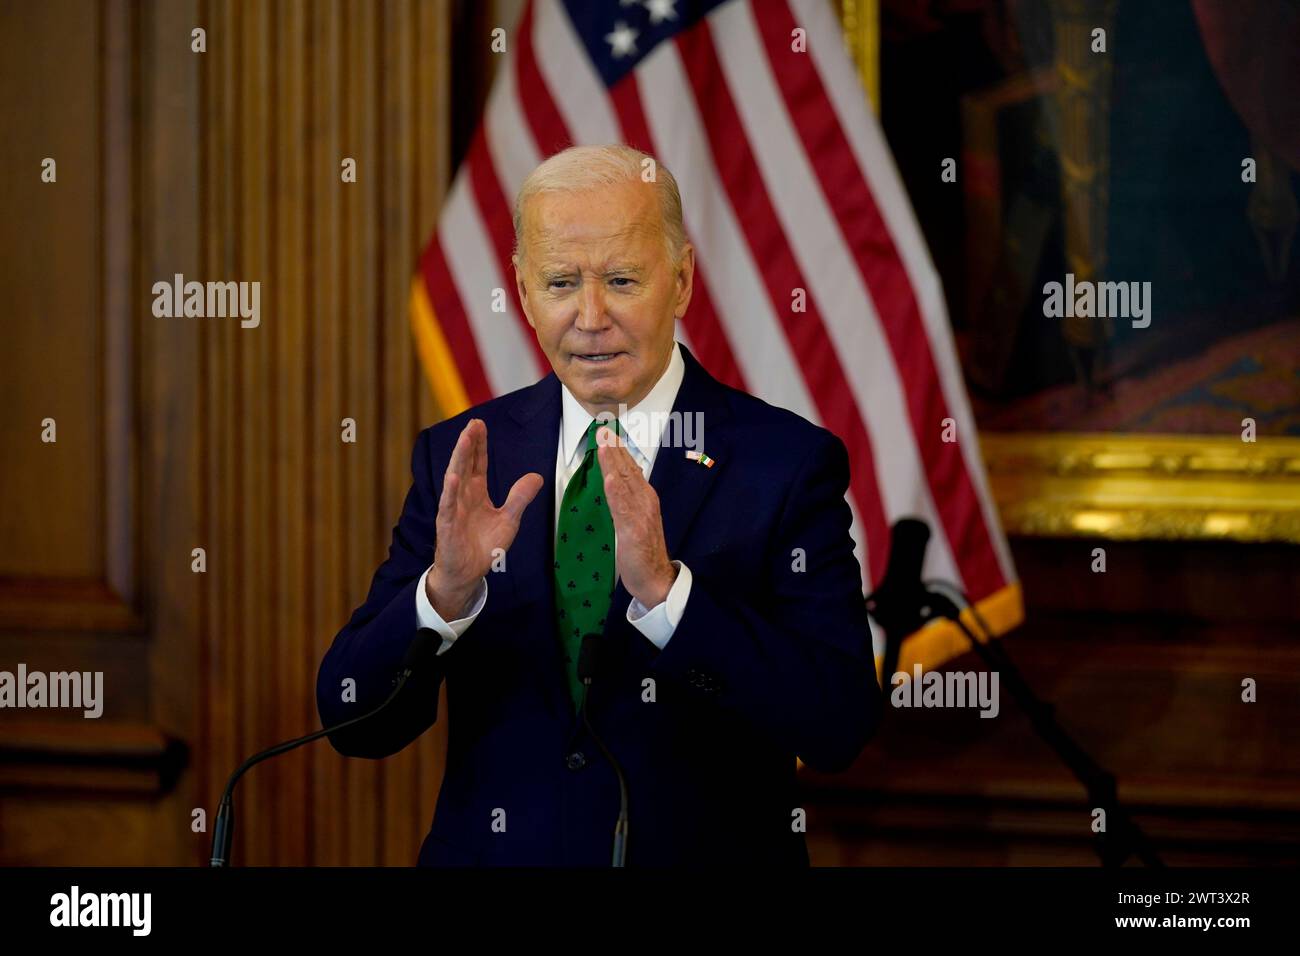 US-Präsident Joe Biden während des jährlichen „Friends of Ireland Luncheon“, das von Sprecher Mike Johnson auf dem Capitol Hill in Washington, DC, während des Besuchs des Taoiseach in den USA zum St. Patrick's Day veranstaltet wird. Bilddatum: Freitag, 15. März 2024. Stockfoto